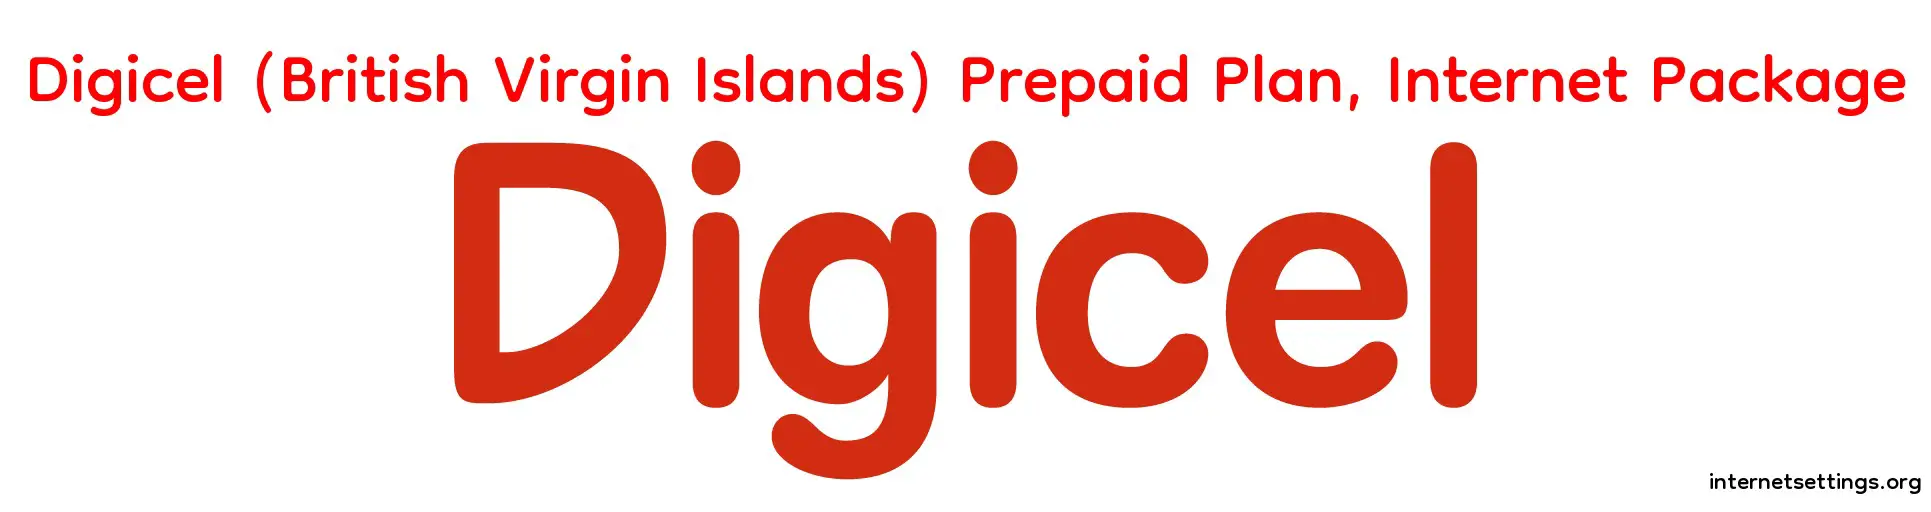 Digicel (British Virgin Islands) Prepaid Plan, Postpaid Plan & Internet Package